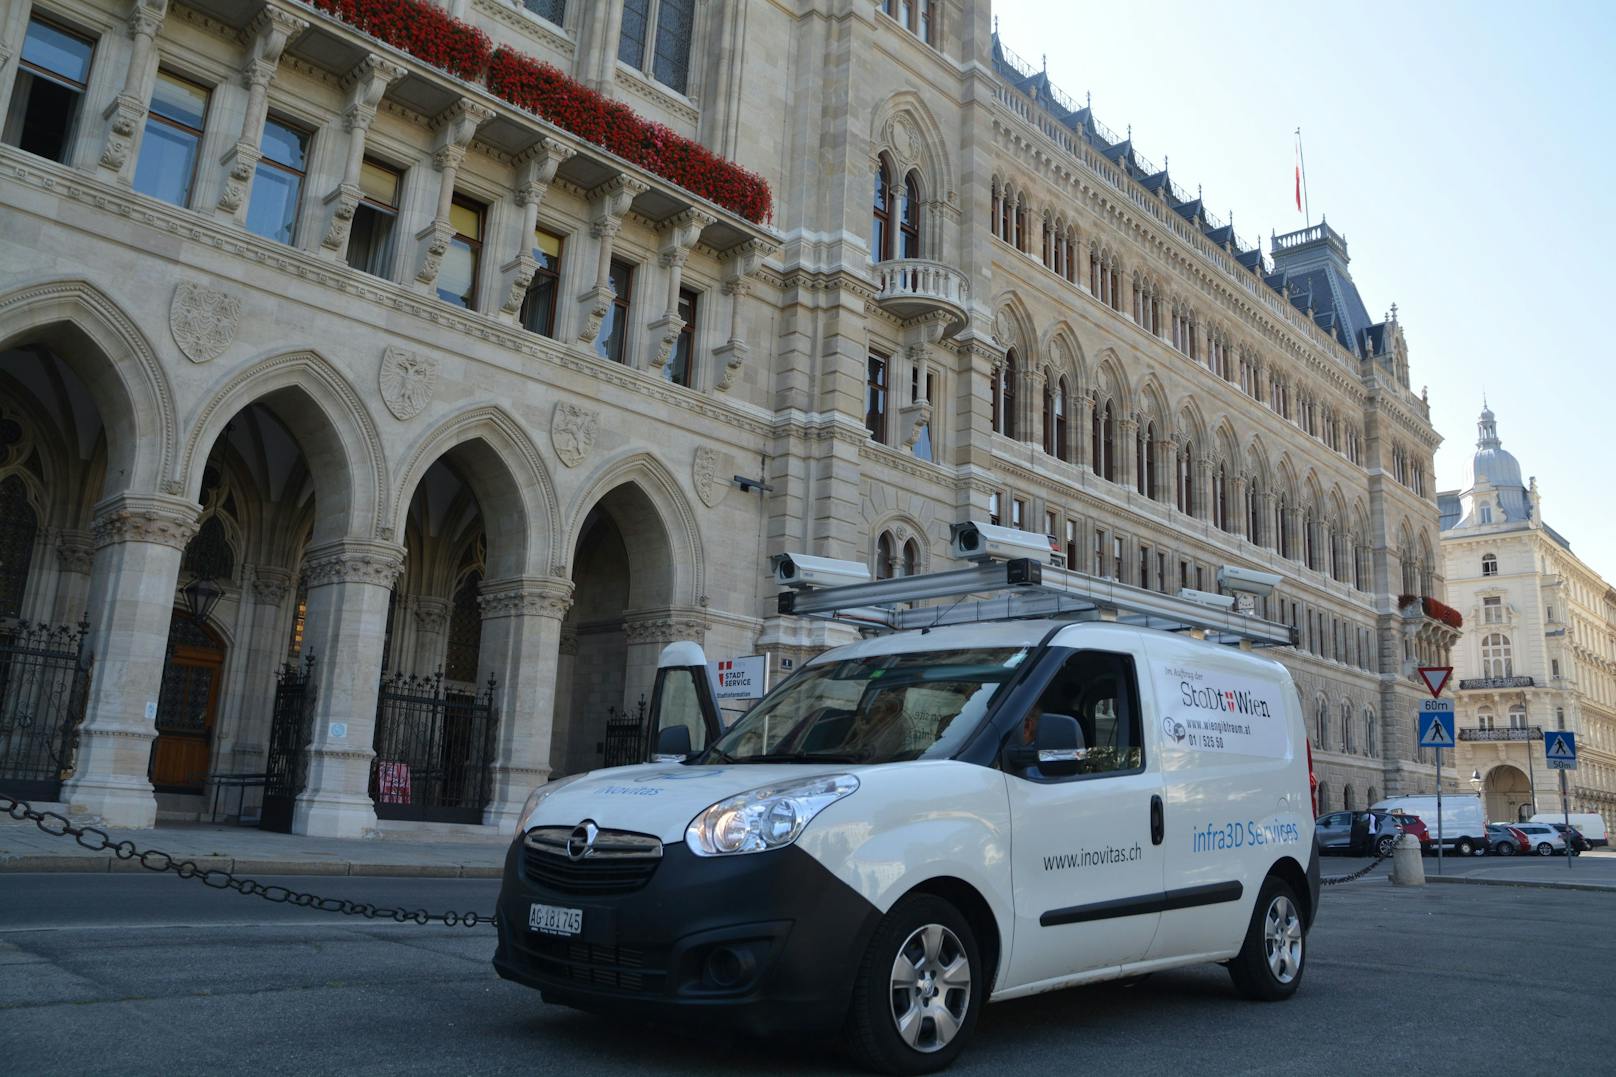 4.000 Kilometer legten die Kameraautos der Stadt Wien für das Tool "Kappazunder" zurück. In regelmäßigen Abschnitten sollen die Strecken neu abgefahren werden.